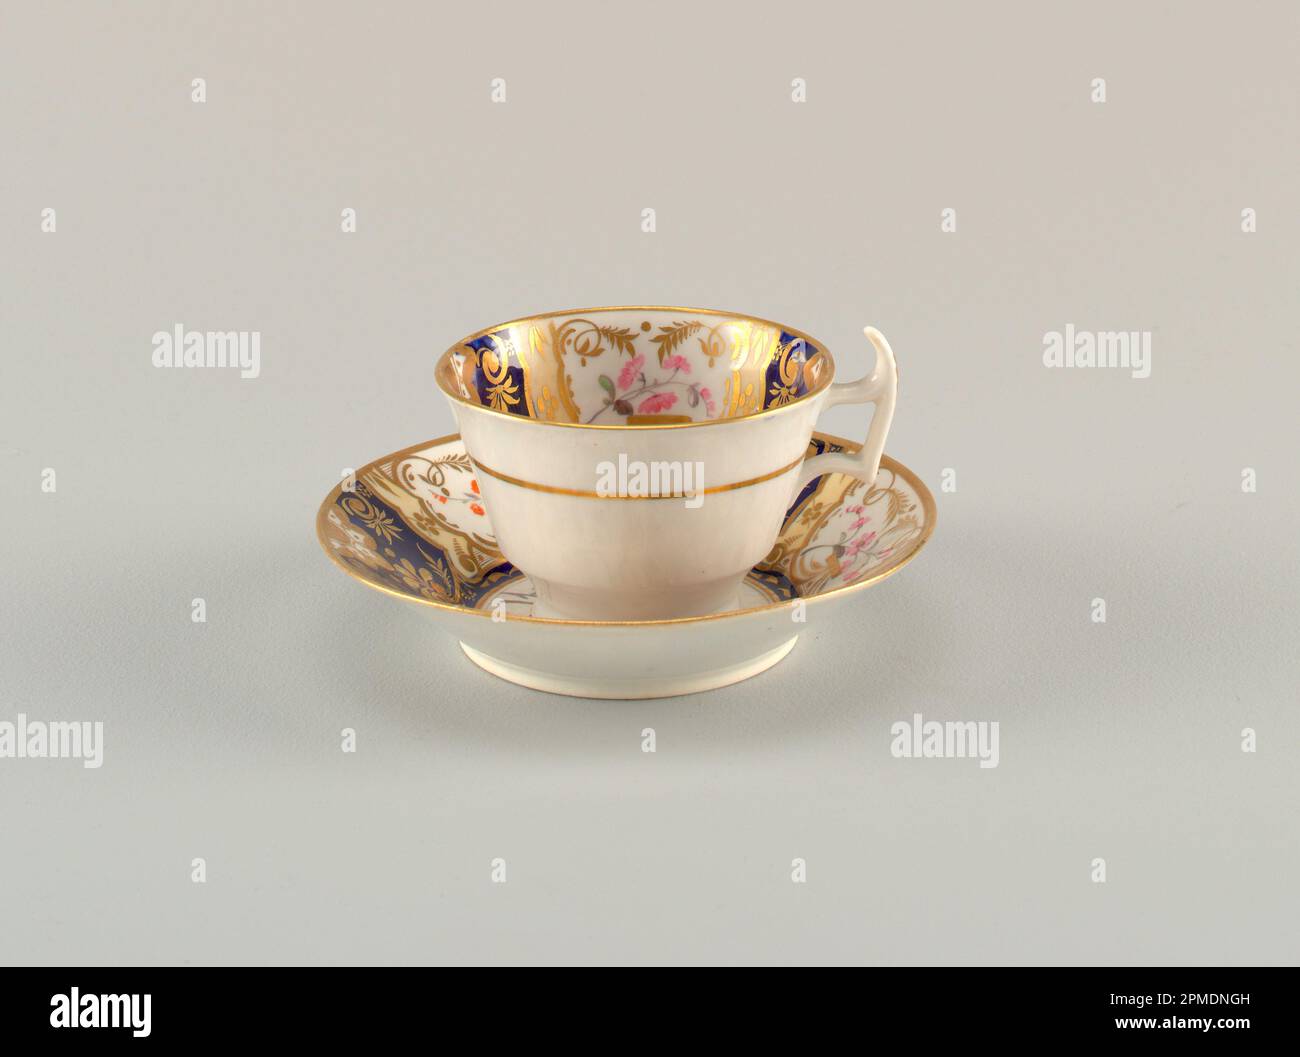 Taza y platillo; posiblemente por Spode Ceramic Works; porcelana, esmaltado y dorado; taza: 7 x 10,6 cm (2 3/4 x 4 3/16 pulg.) platillo: 14,2 x 3 cm (5 9/16 x 1 3/16 pulg.) Foto de stock